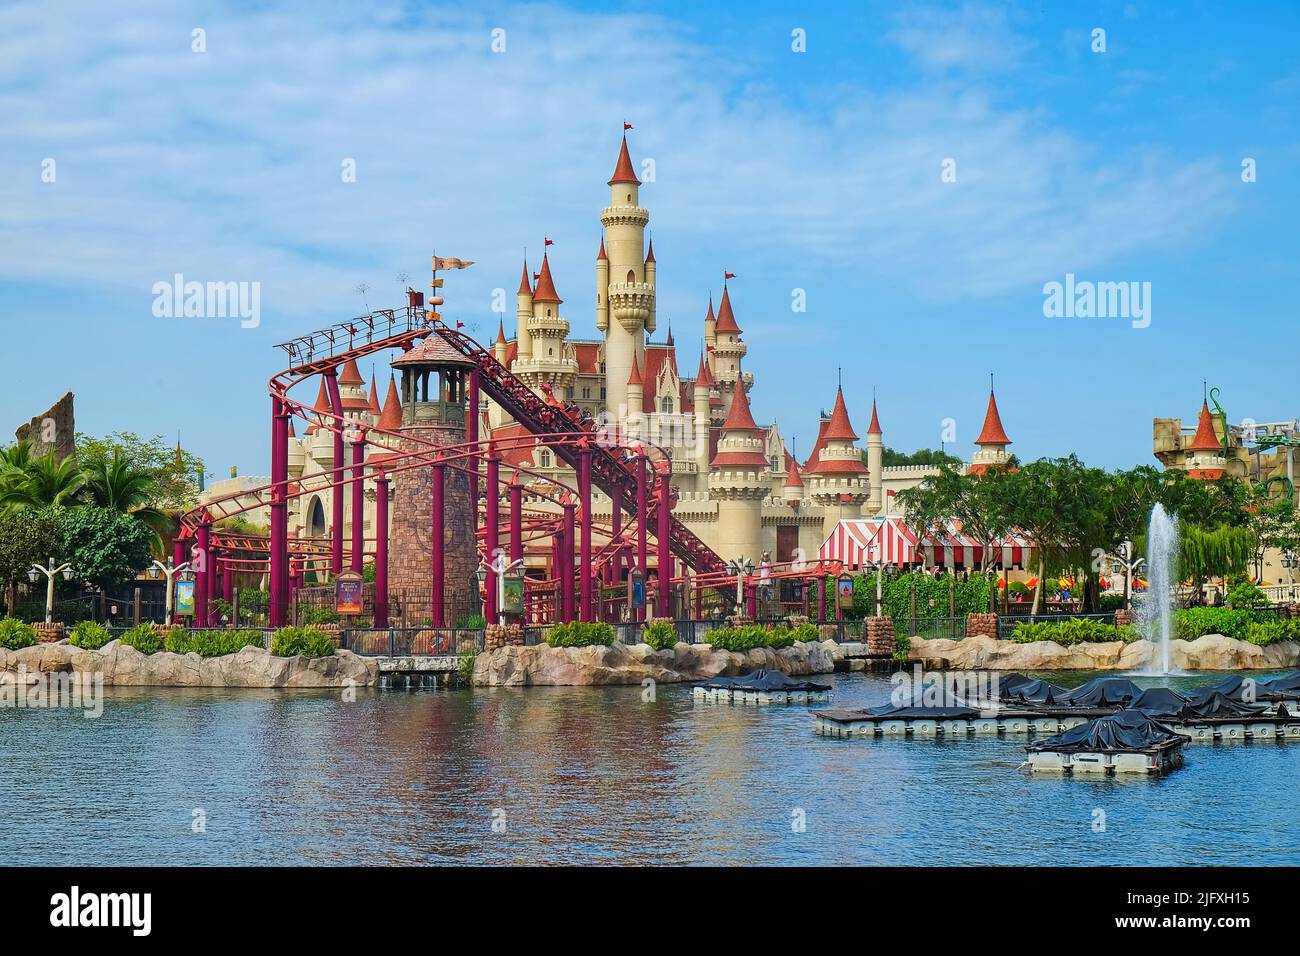 Landschaftsansicht des wunderschönen Märchenschlosses mit der Achterbahn in weit entfernter Zone in den Universal Studios Singapore, einem Themenvergnügungspark Stockfoto